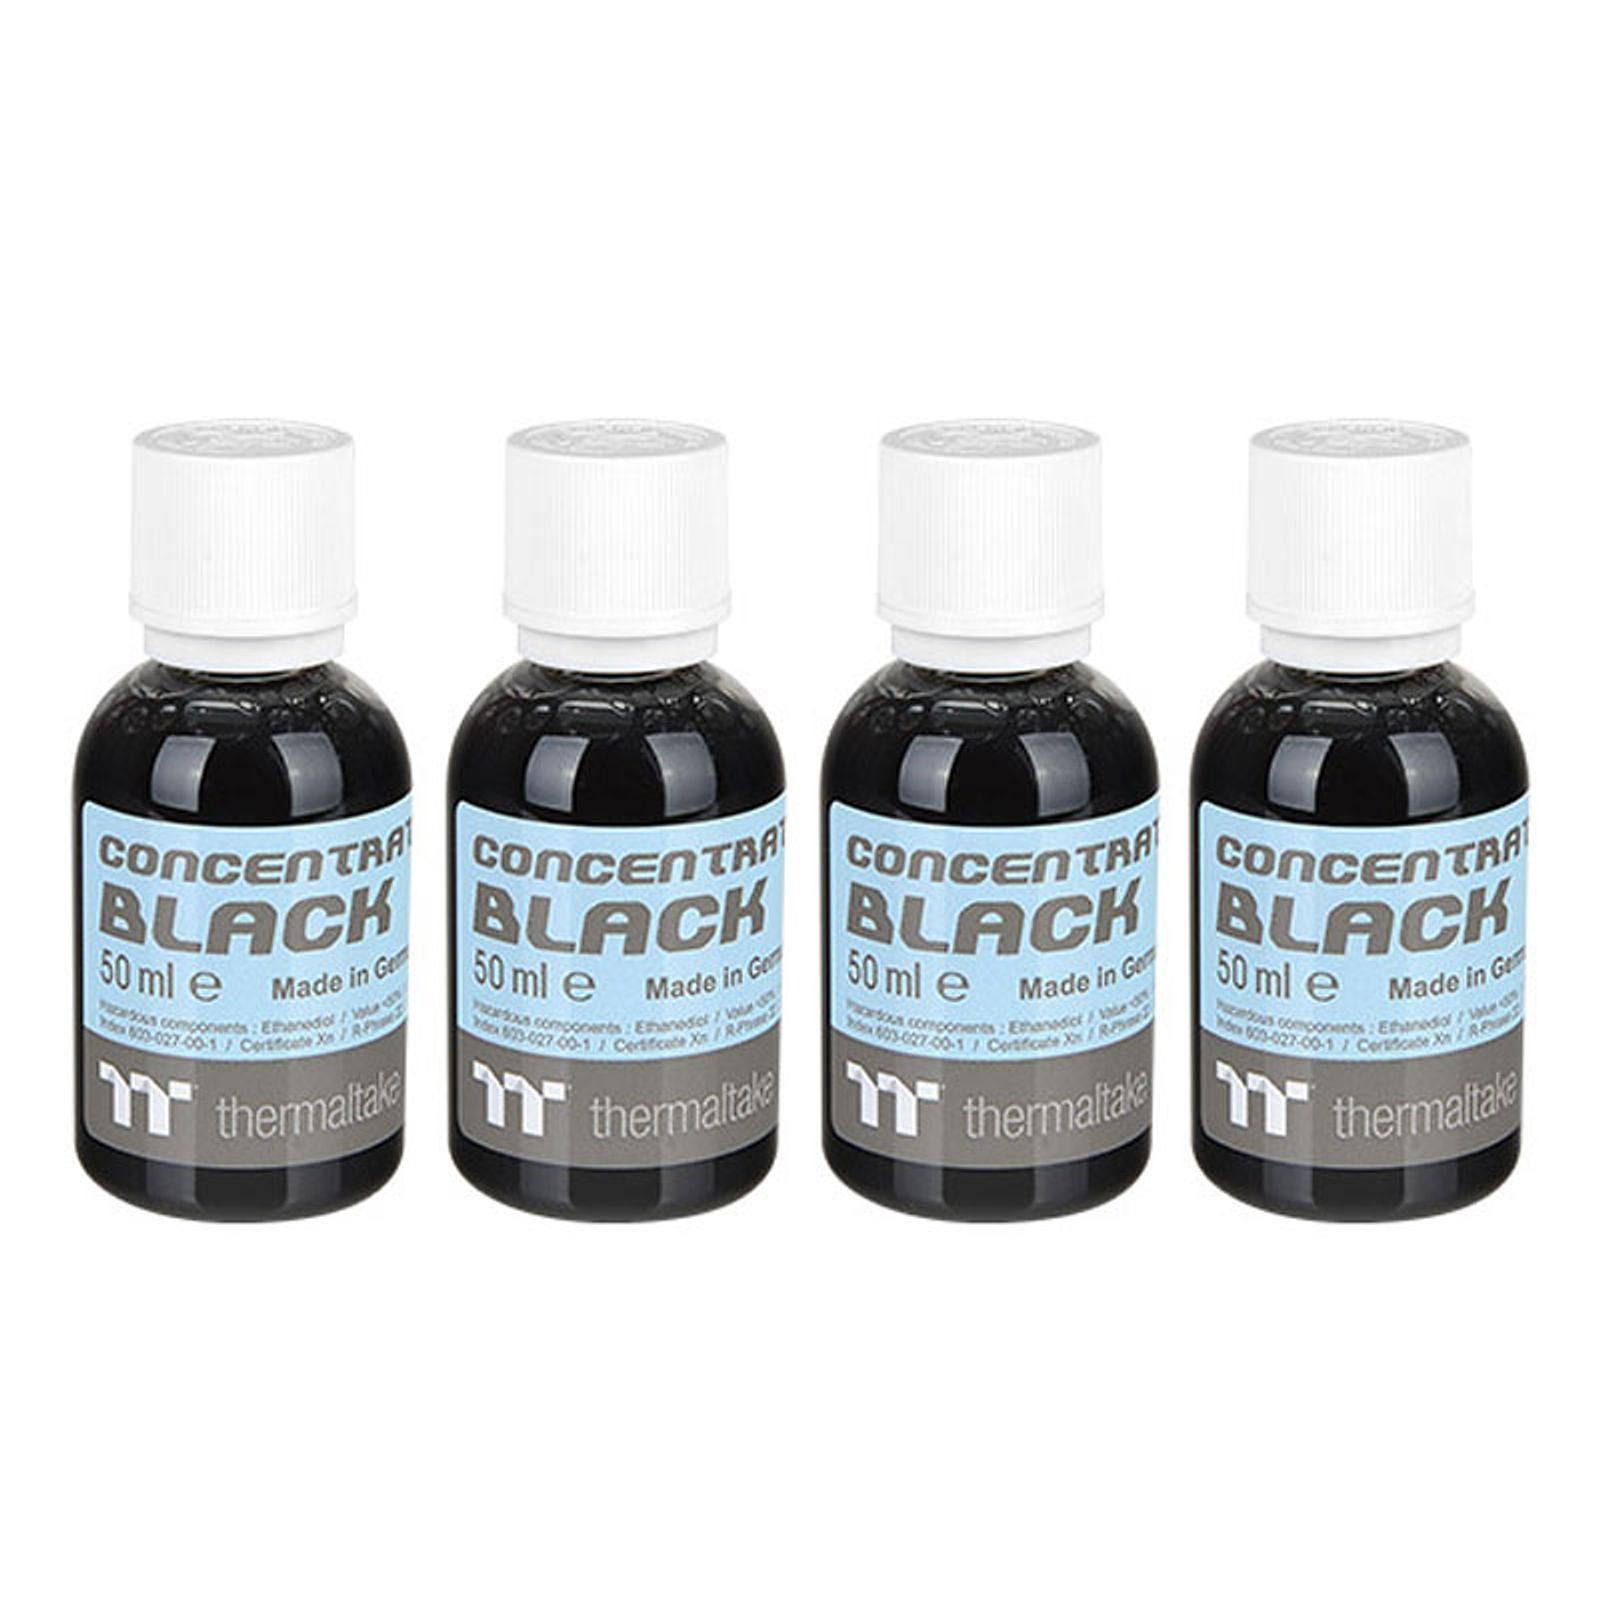 Thermaltake Liquide Tt Premium Concentrate Black 4 x 50ml - Watercooling - 0